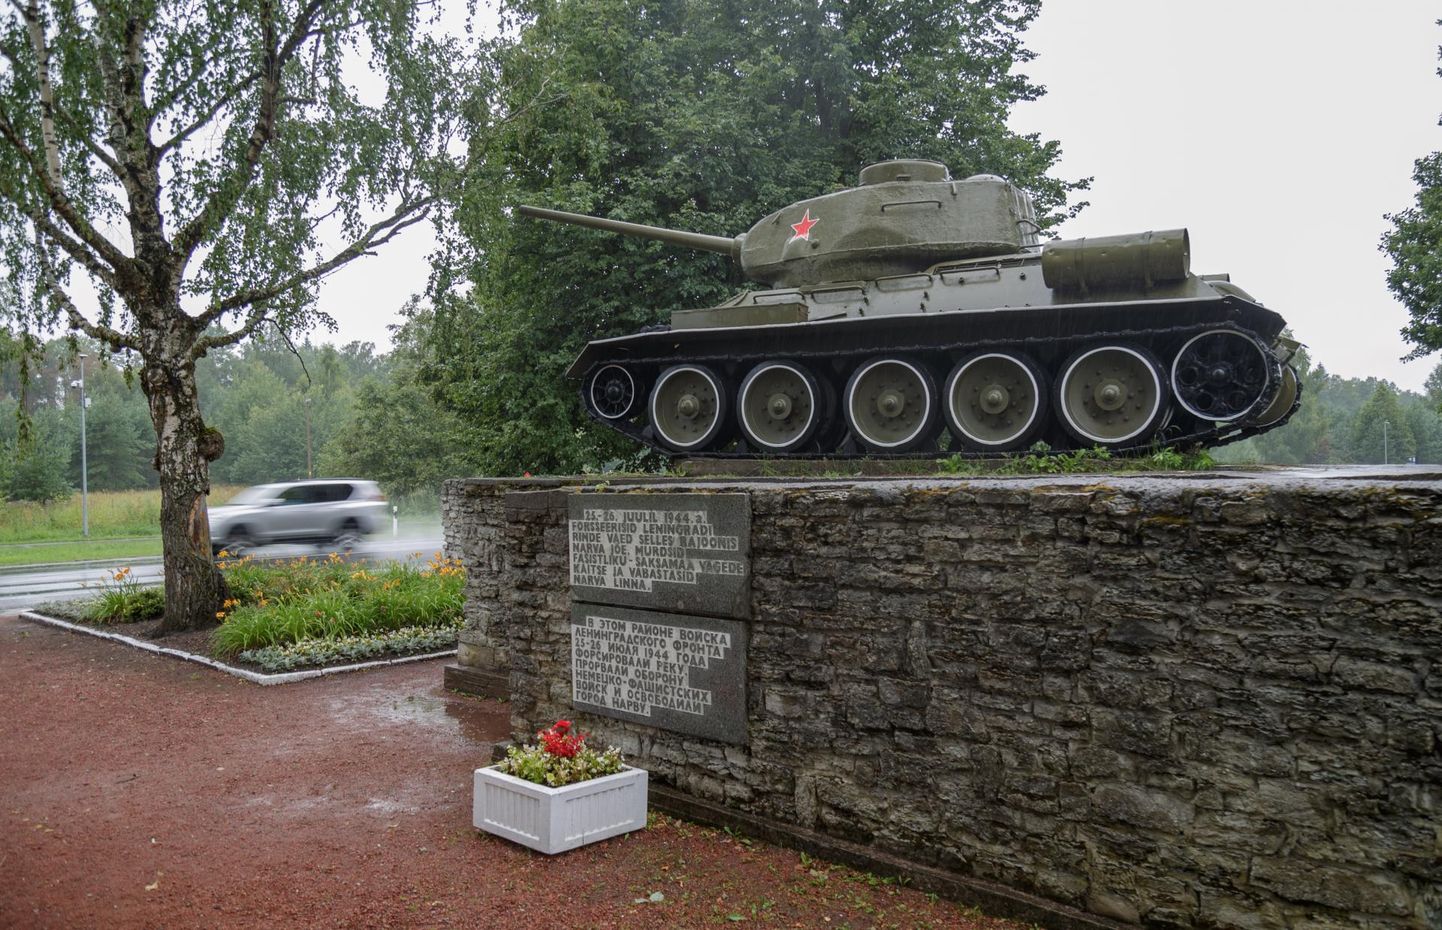 Эстонцы придерживаются одного мнения по поводу танка в Нарве - его нужно убрать.